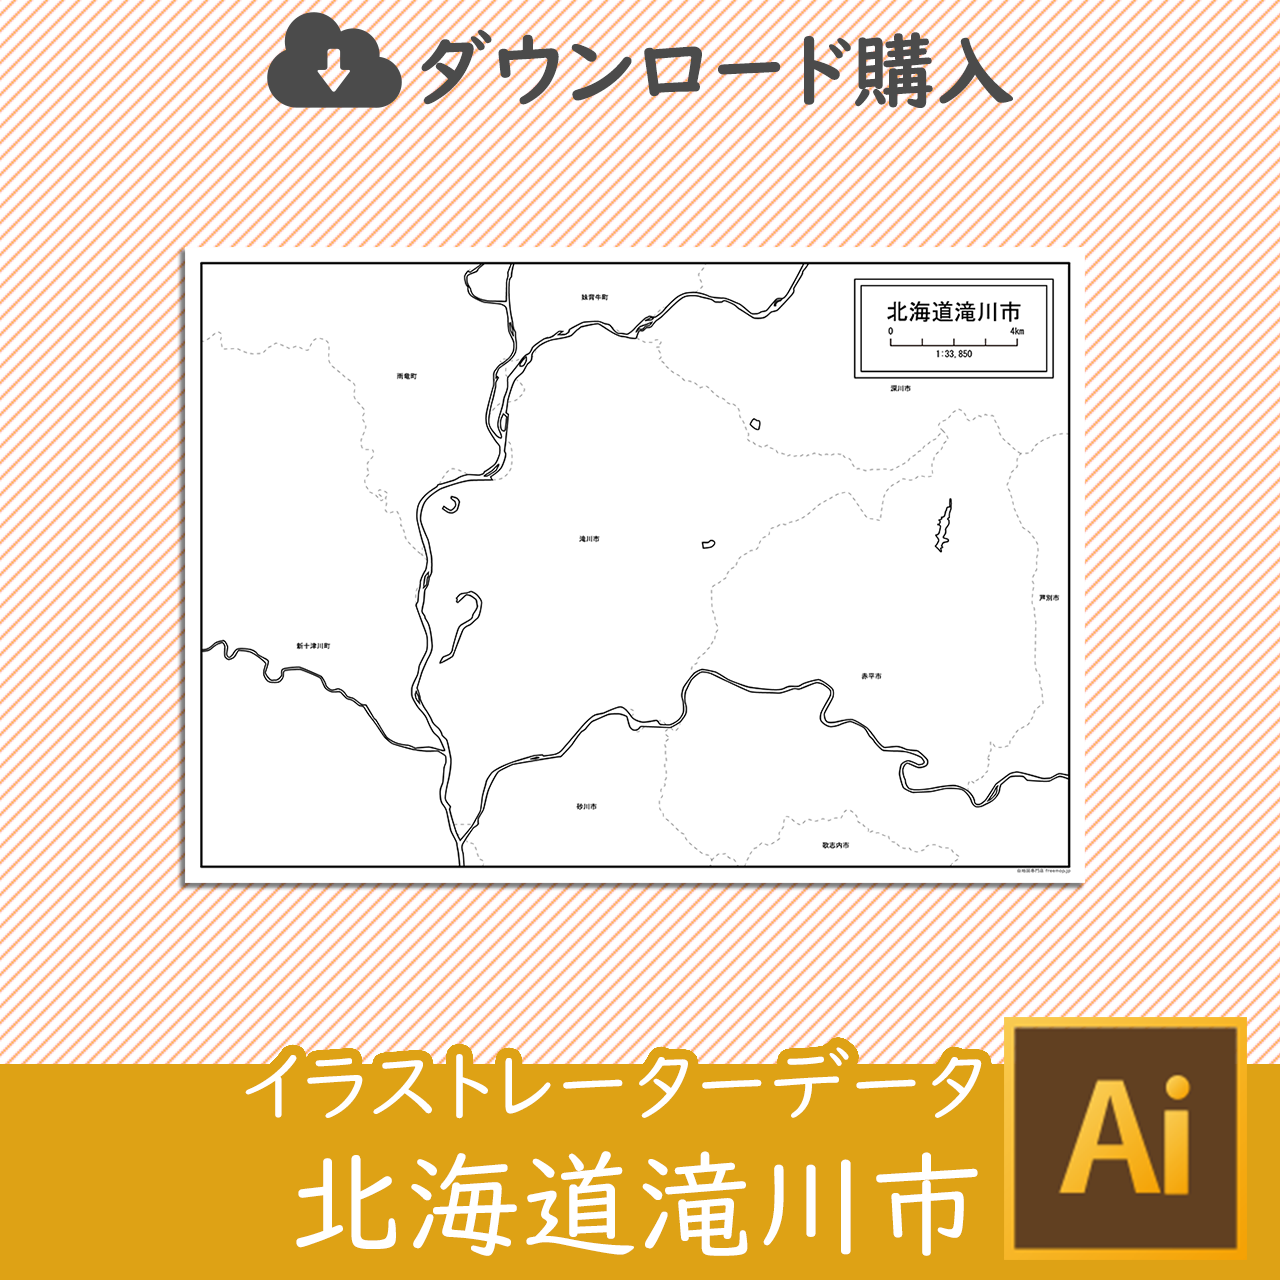 滝川市のaiデータのサムネイル画像